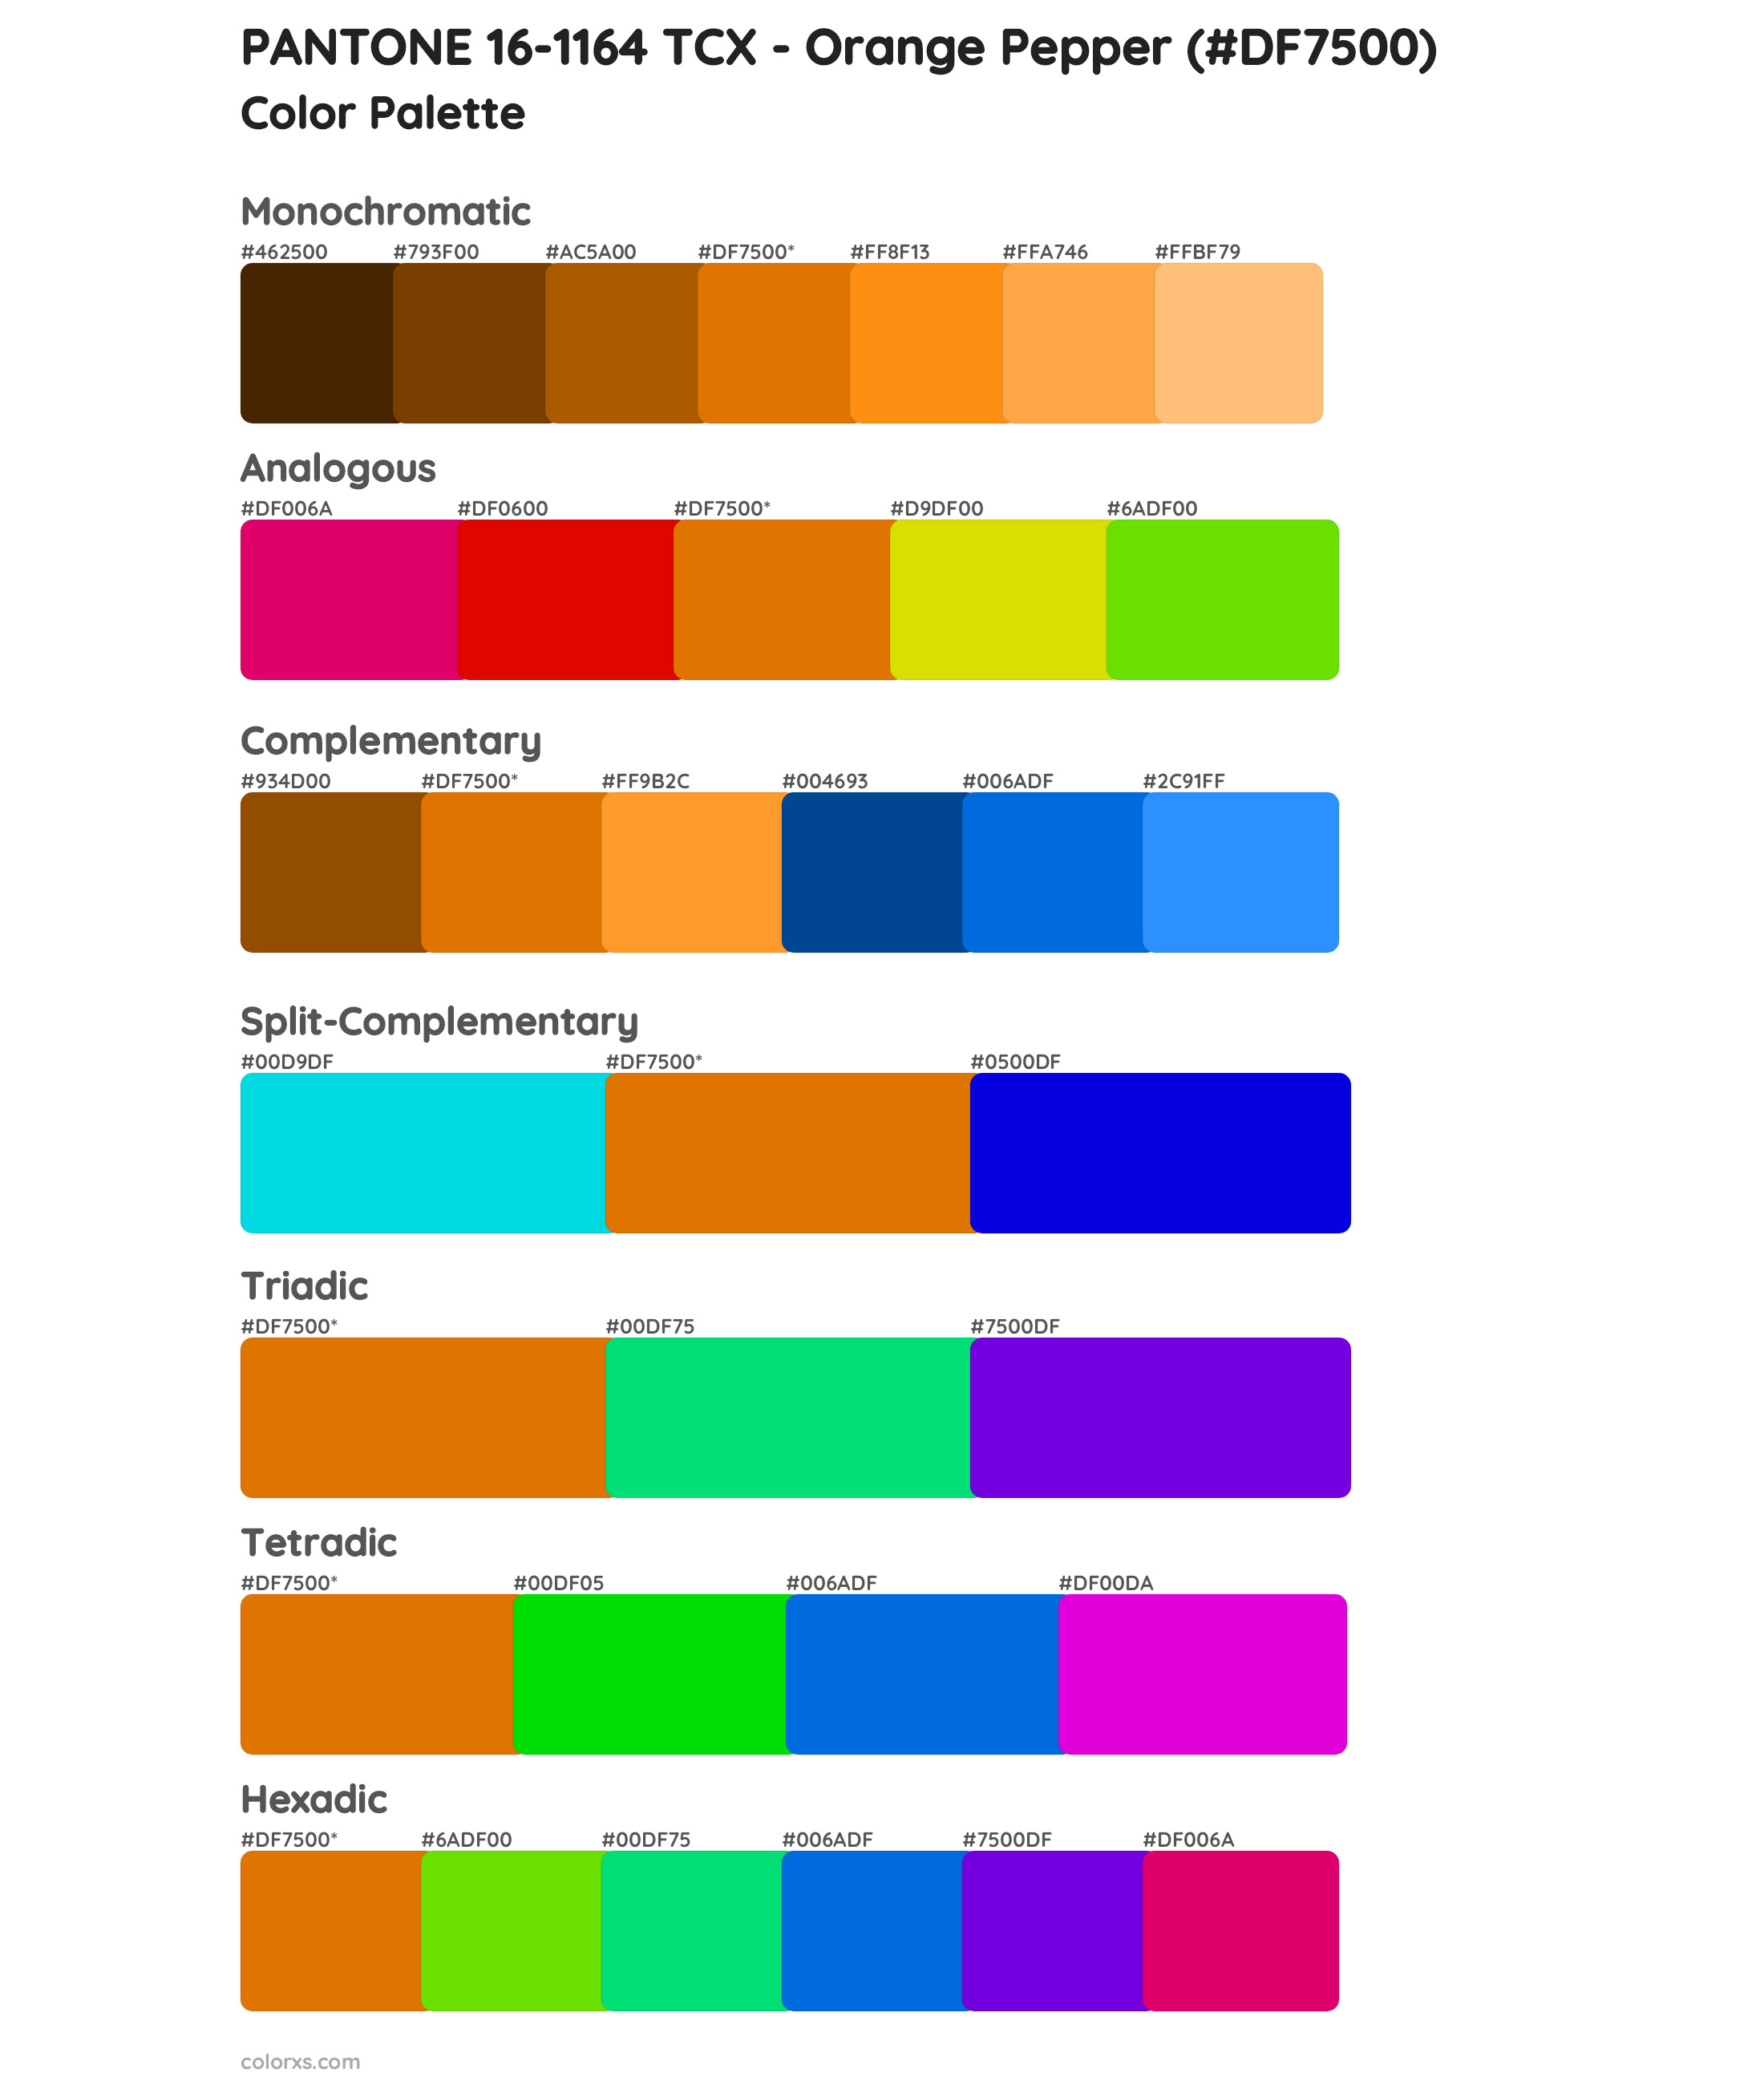 PANTONE 16-1164 TCX - Orange Pepper Color Scheme Palettes